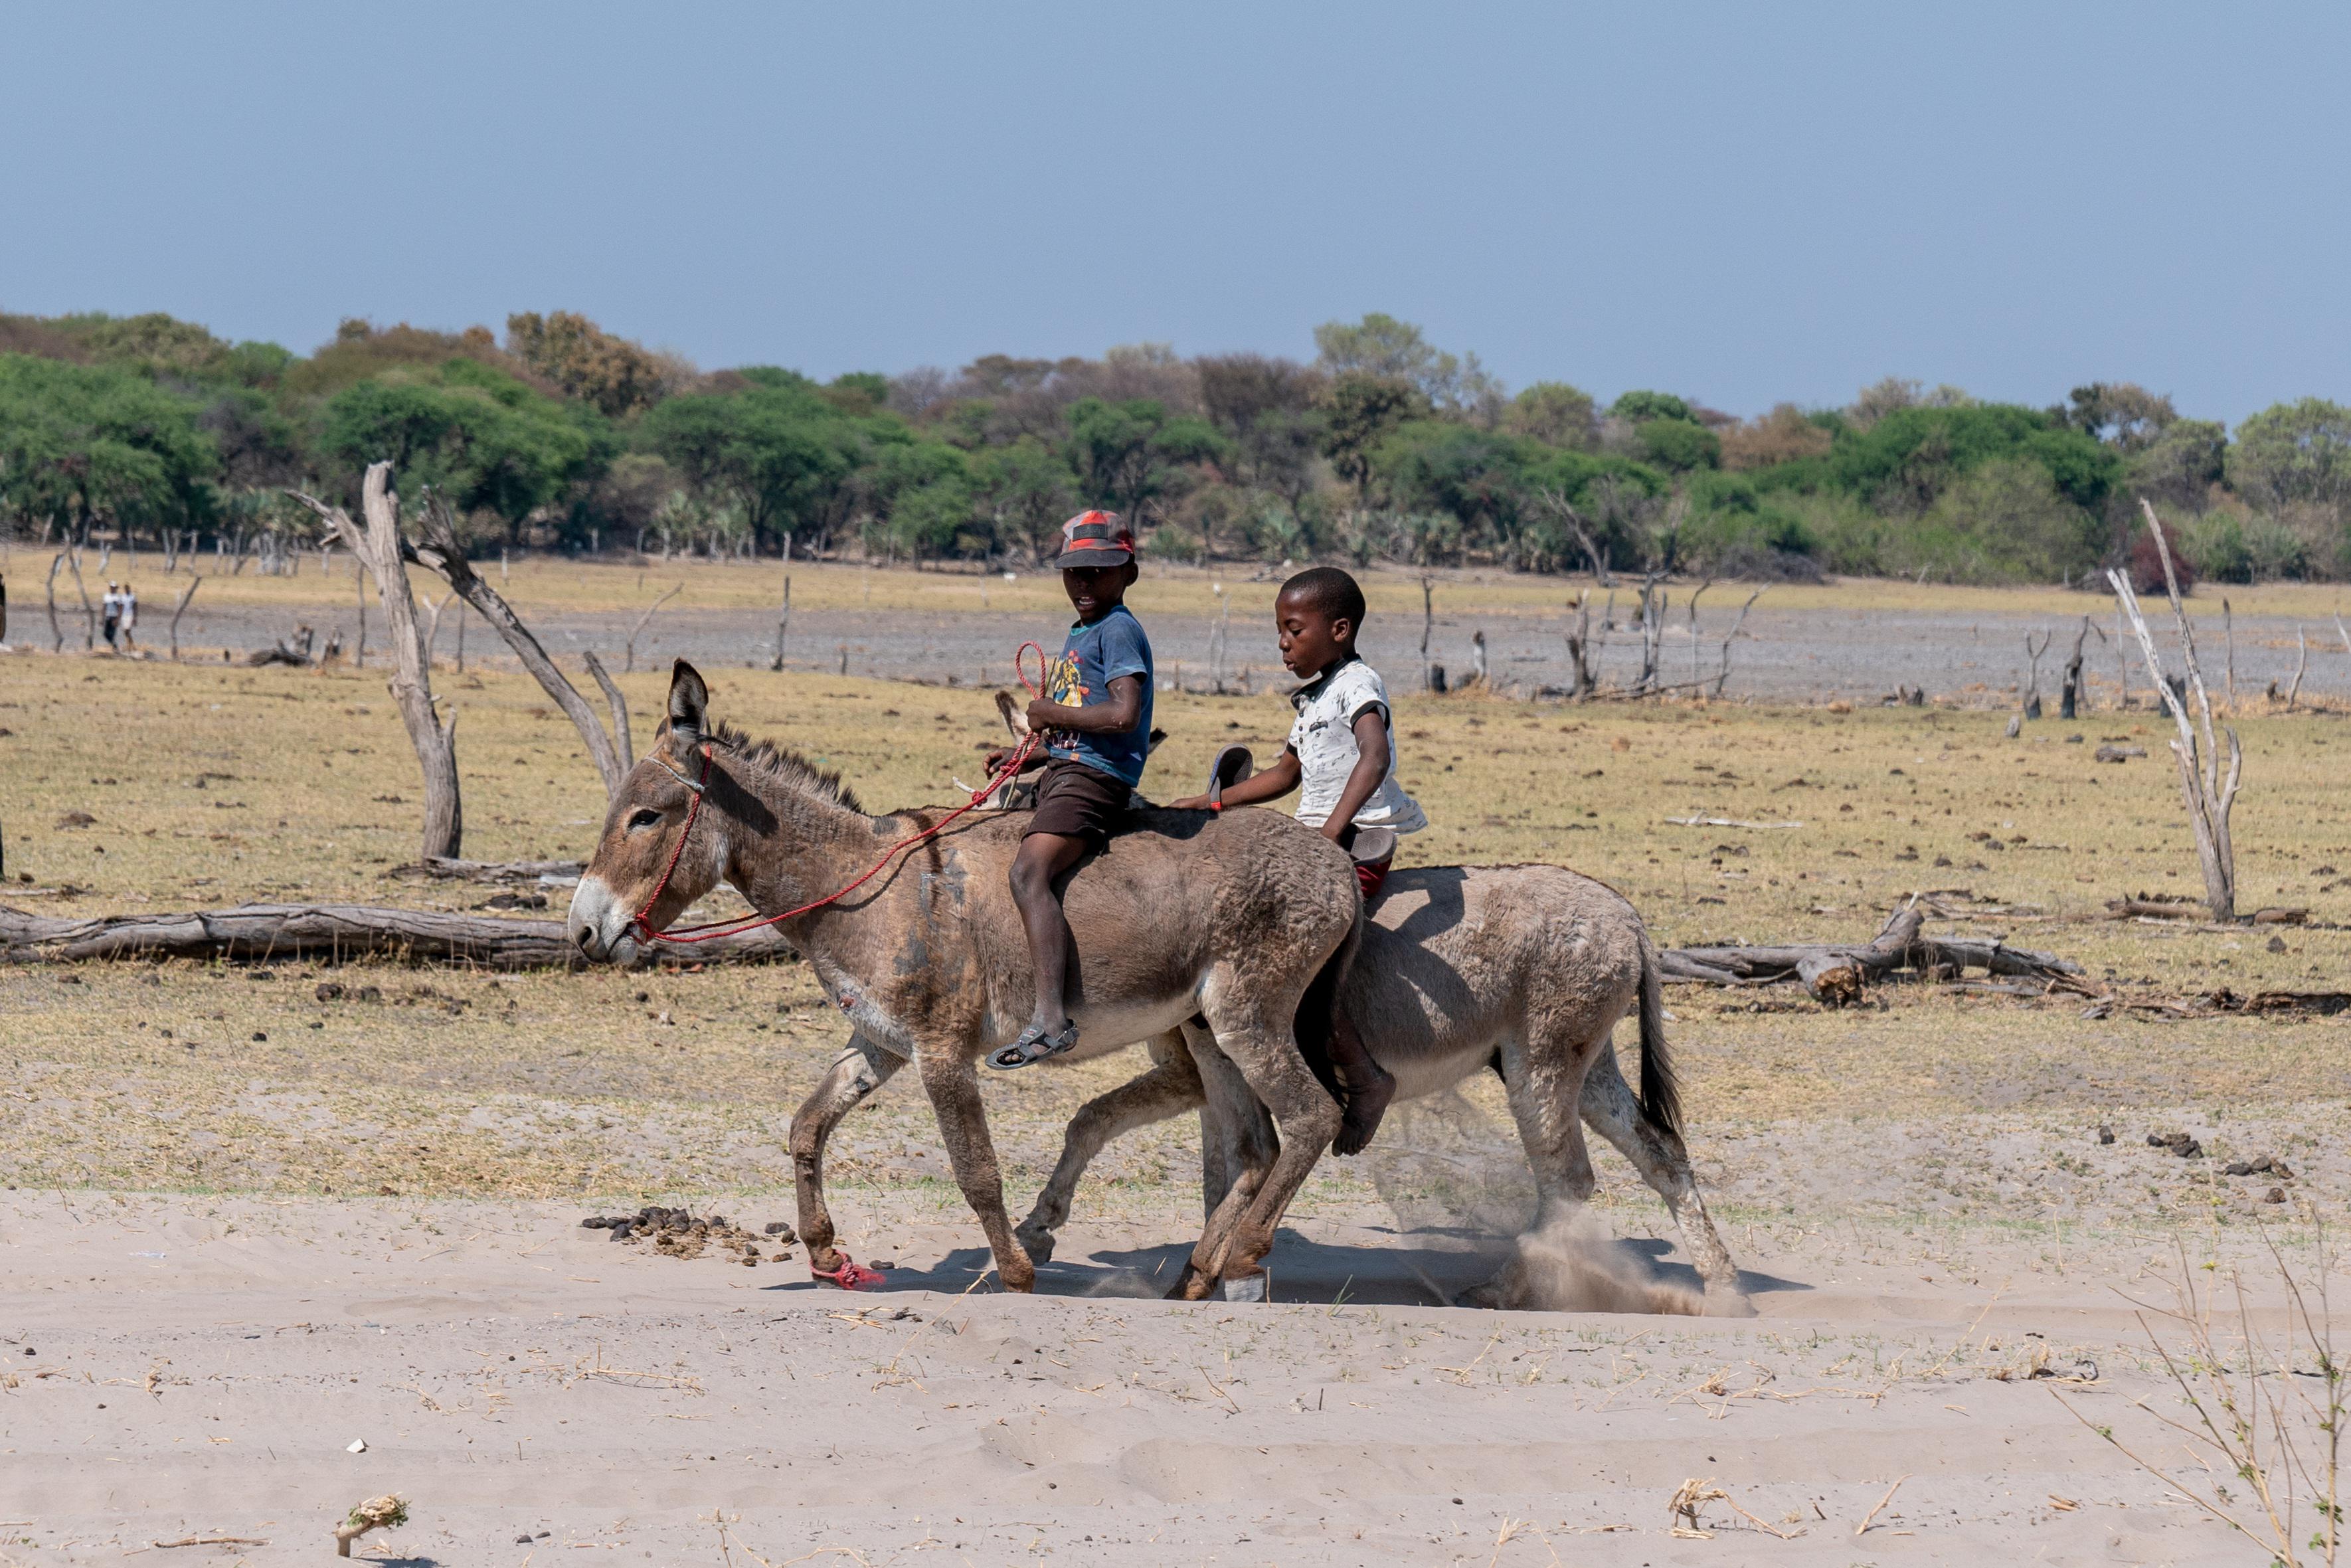 Children ride two donkeys.